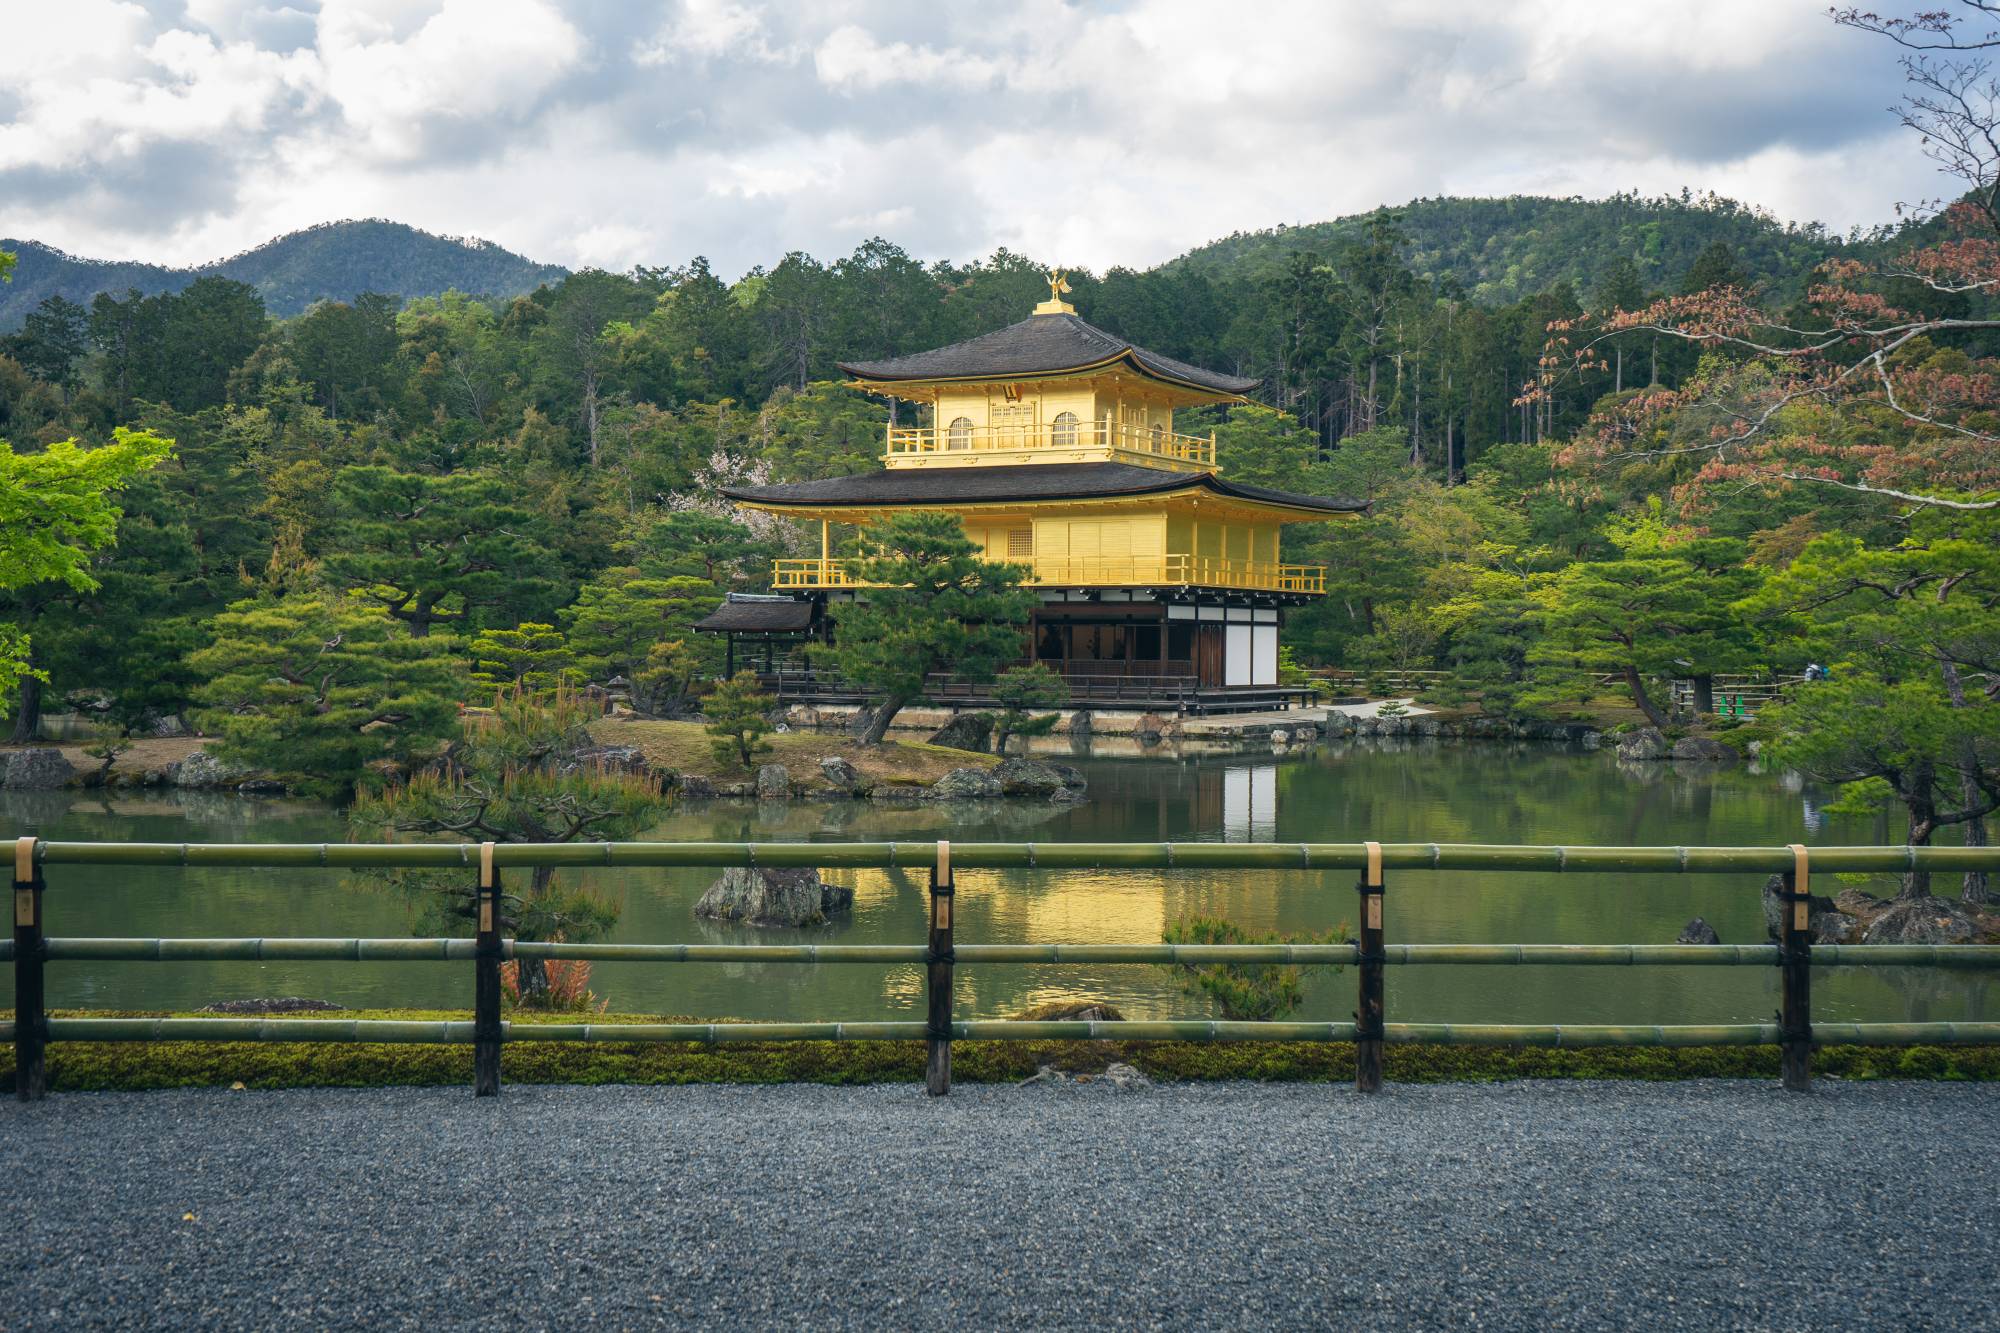 Mê mẩn hình ảnh yên bình của thành phố Kyoto, Nhật Bản những ngày vắng khách du lịch 0